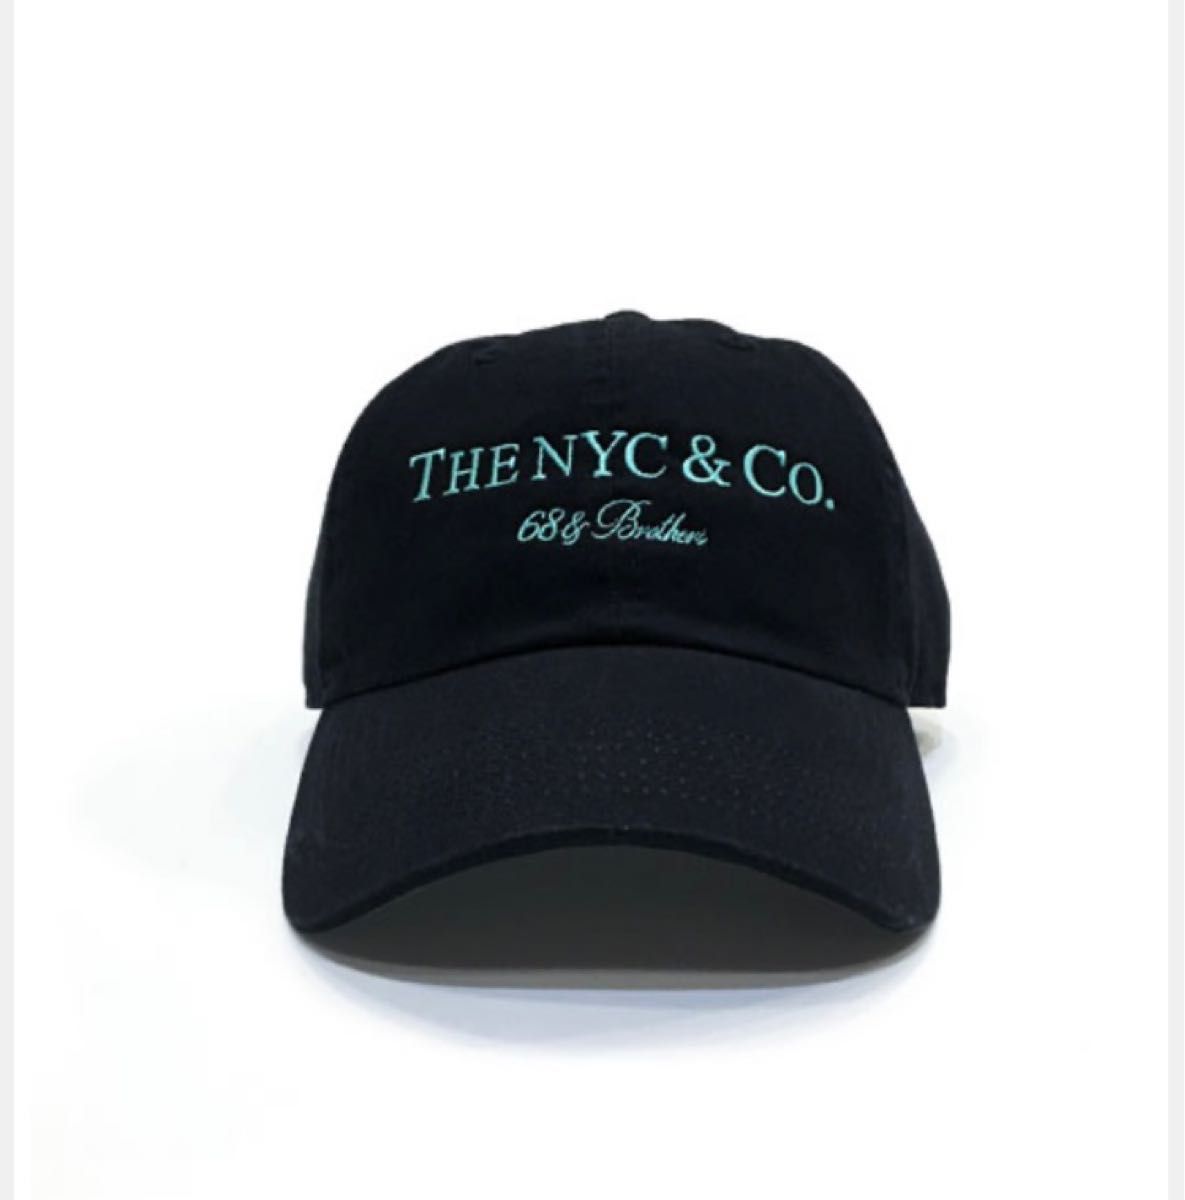 68&brothers シックスティエイトアンドブラザーズ キャップ 帽子 6パネル THE NYC&Co ティファニー カラー